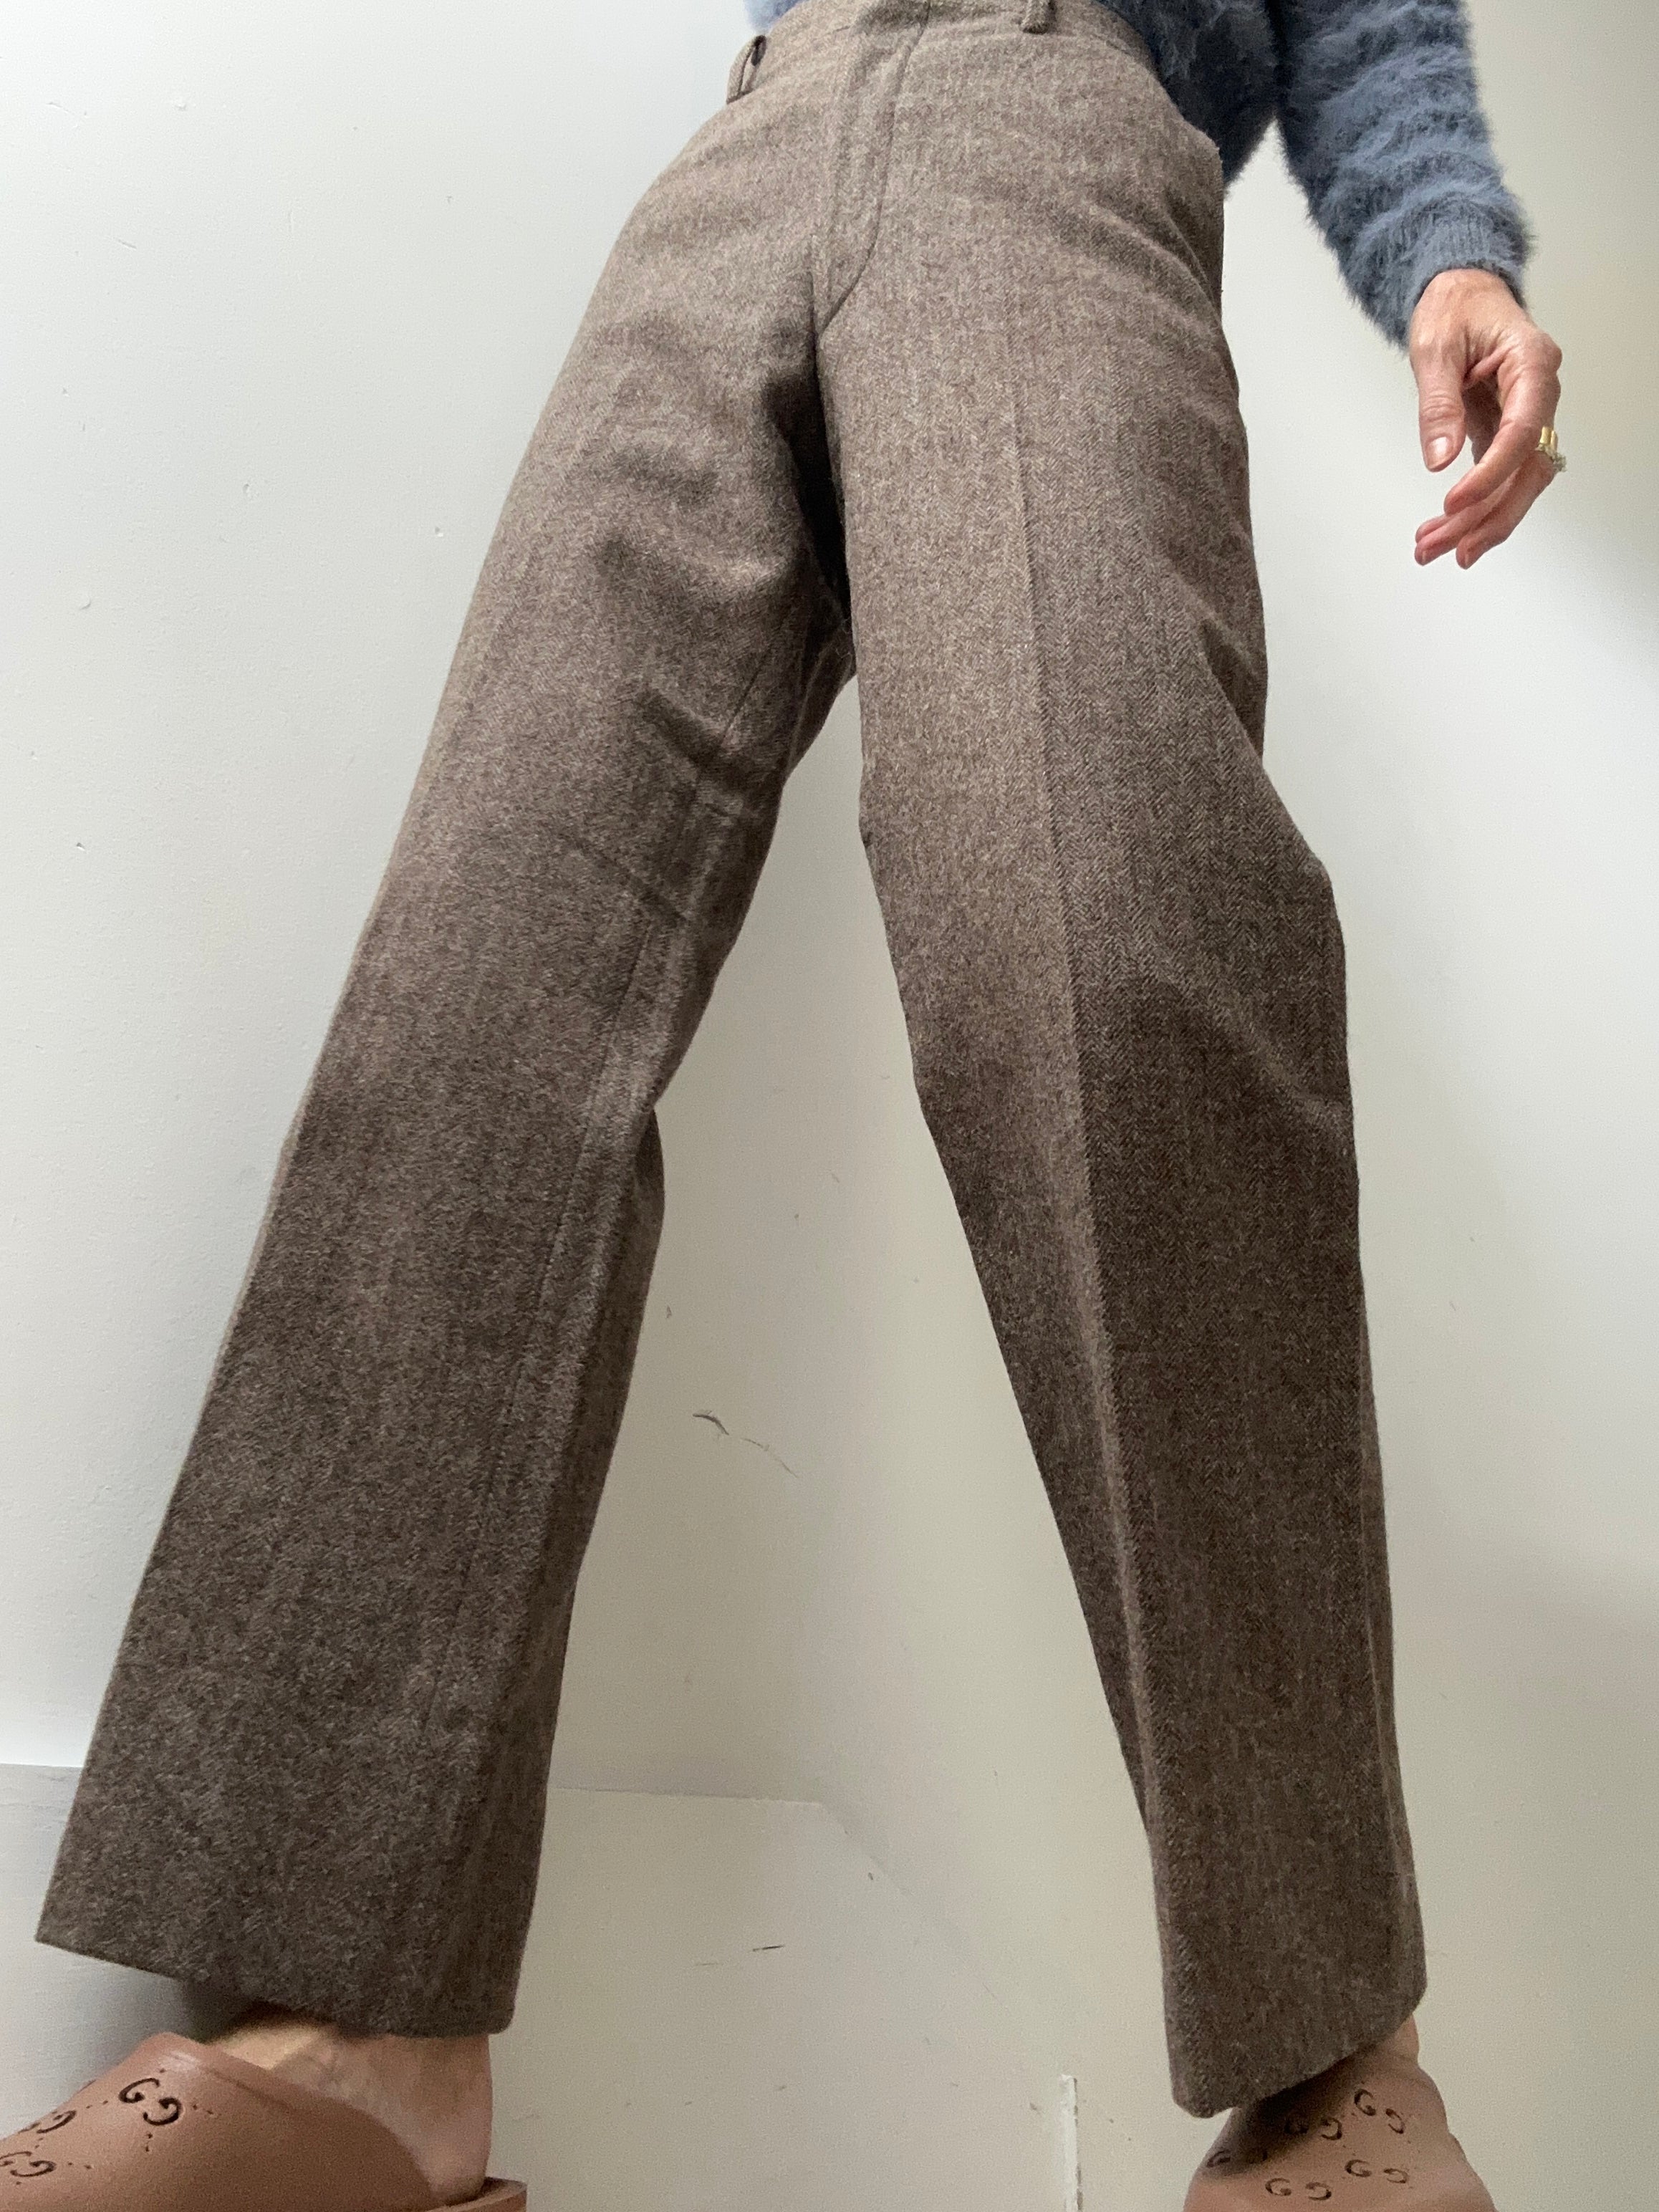 Future Nomads Pants Medium Brown Wool Japan Vintage Pants